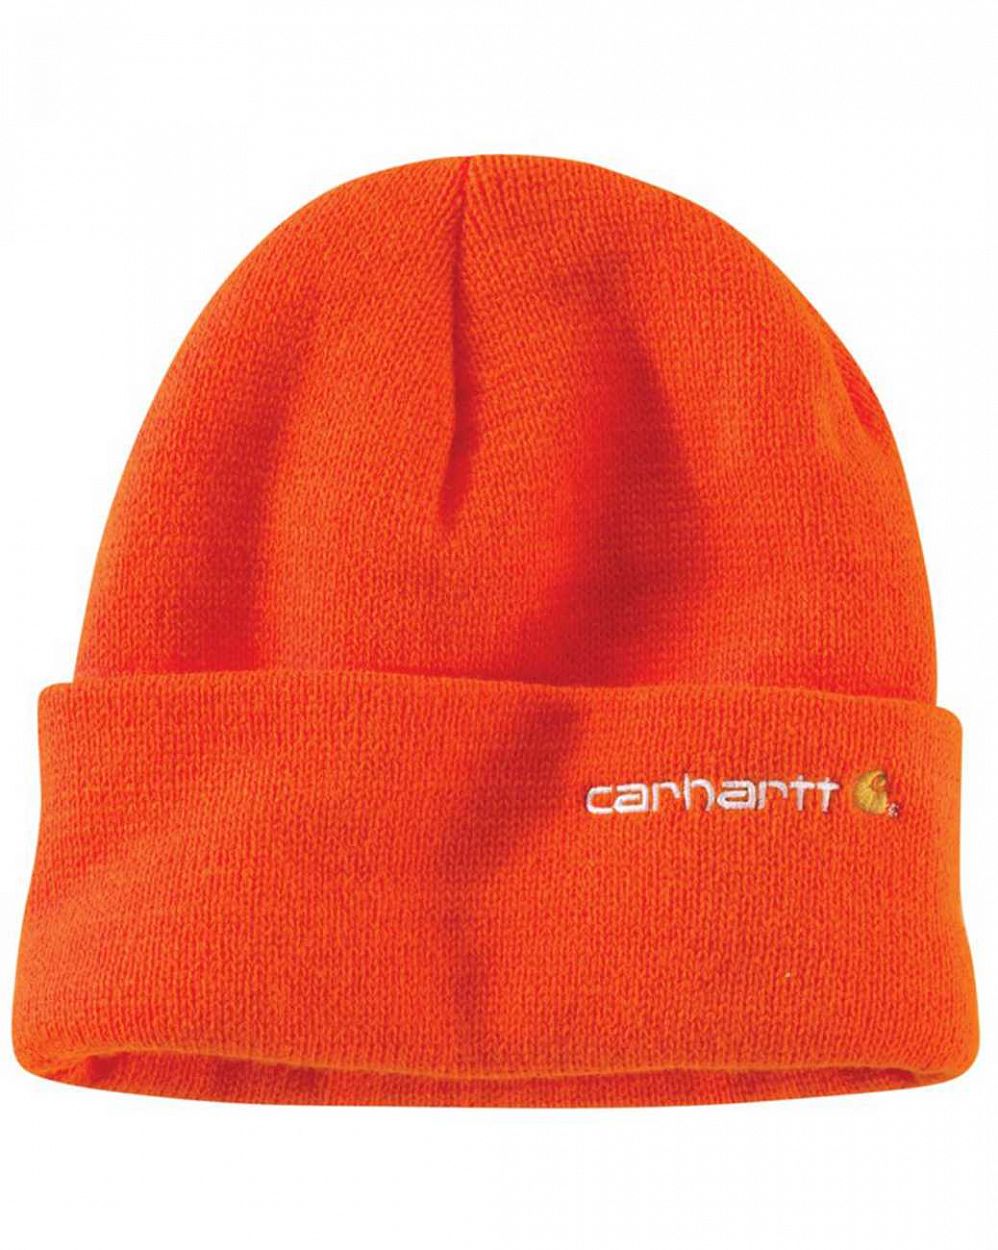 Шапка зимняя с подворотом зимняя с подворотом Carhartt Thinsulate Flex Orange отзывы